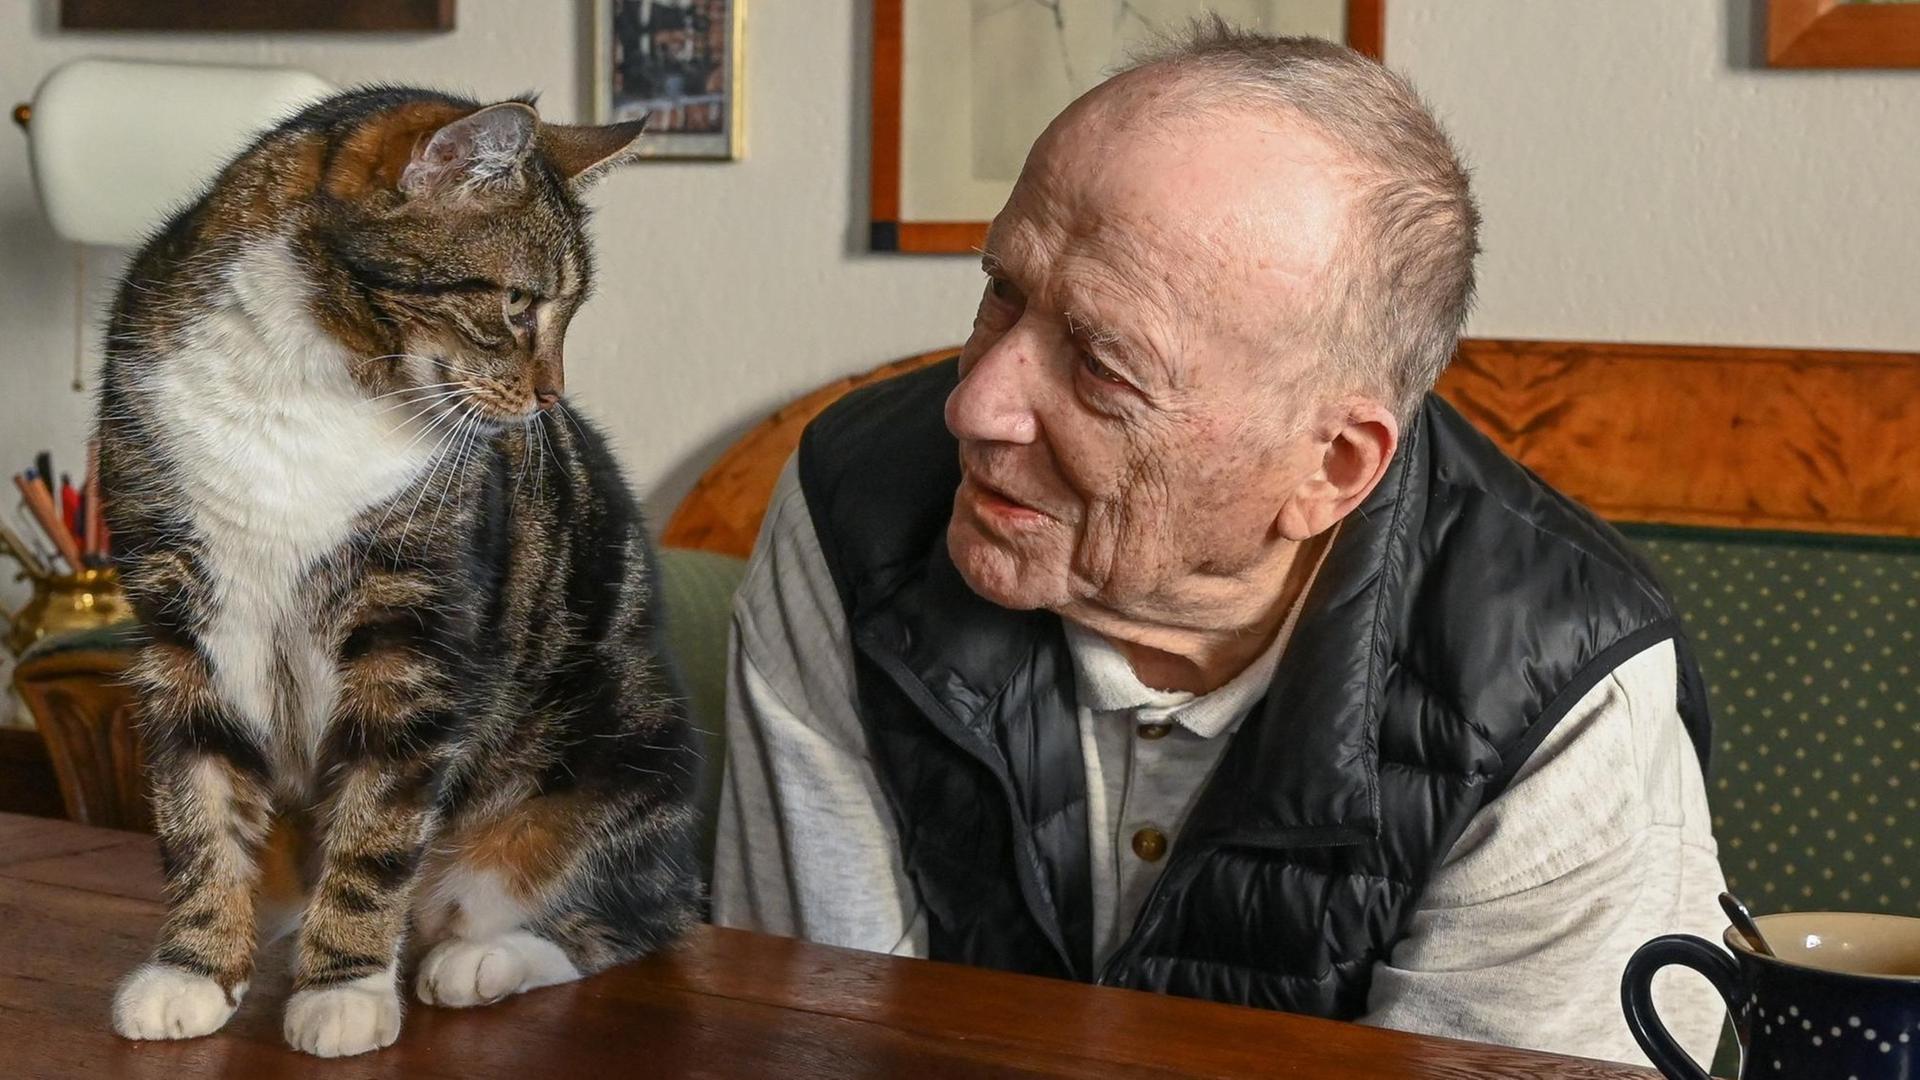 Der 90-jährige Drehbuchautor Wolfgang Kohlhaase betrachtet freundlich eine Katze.